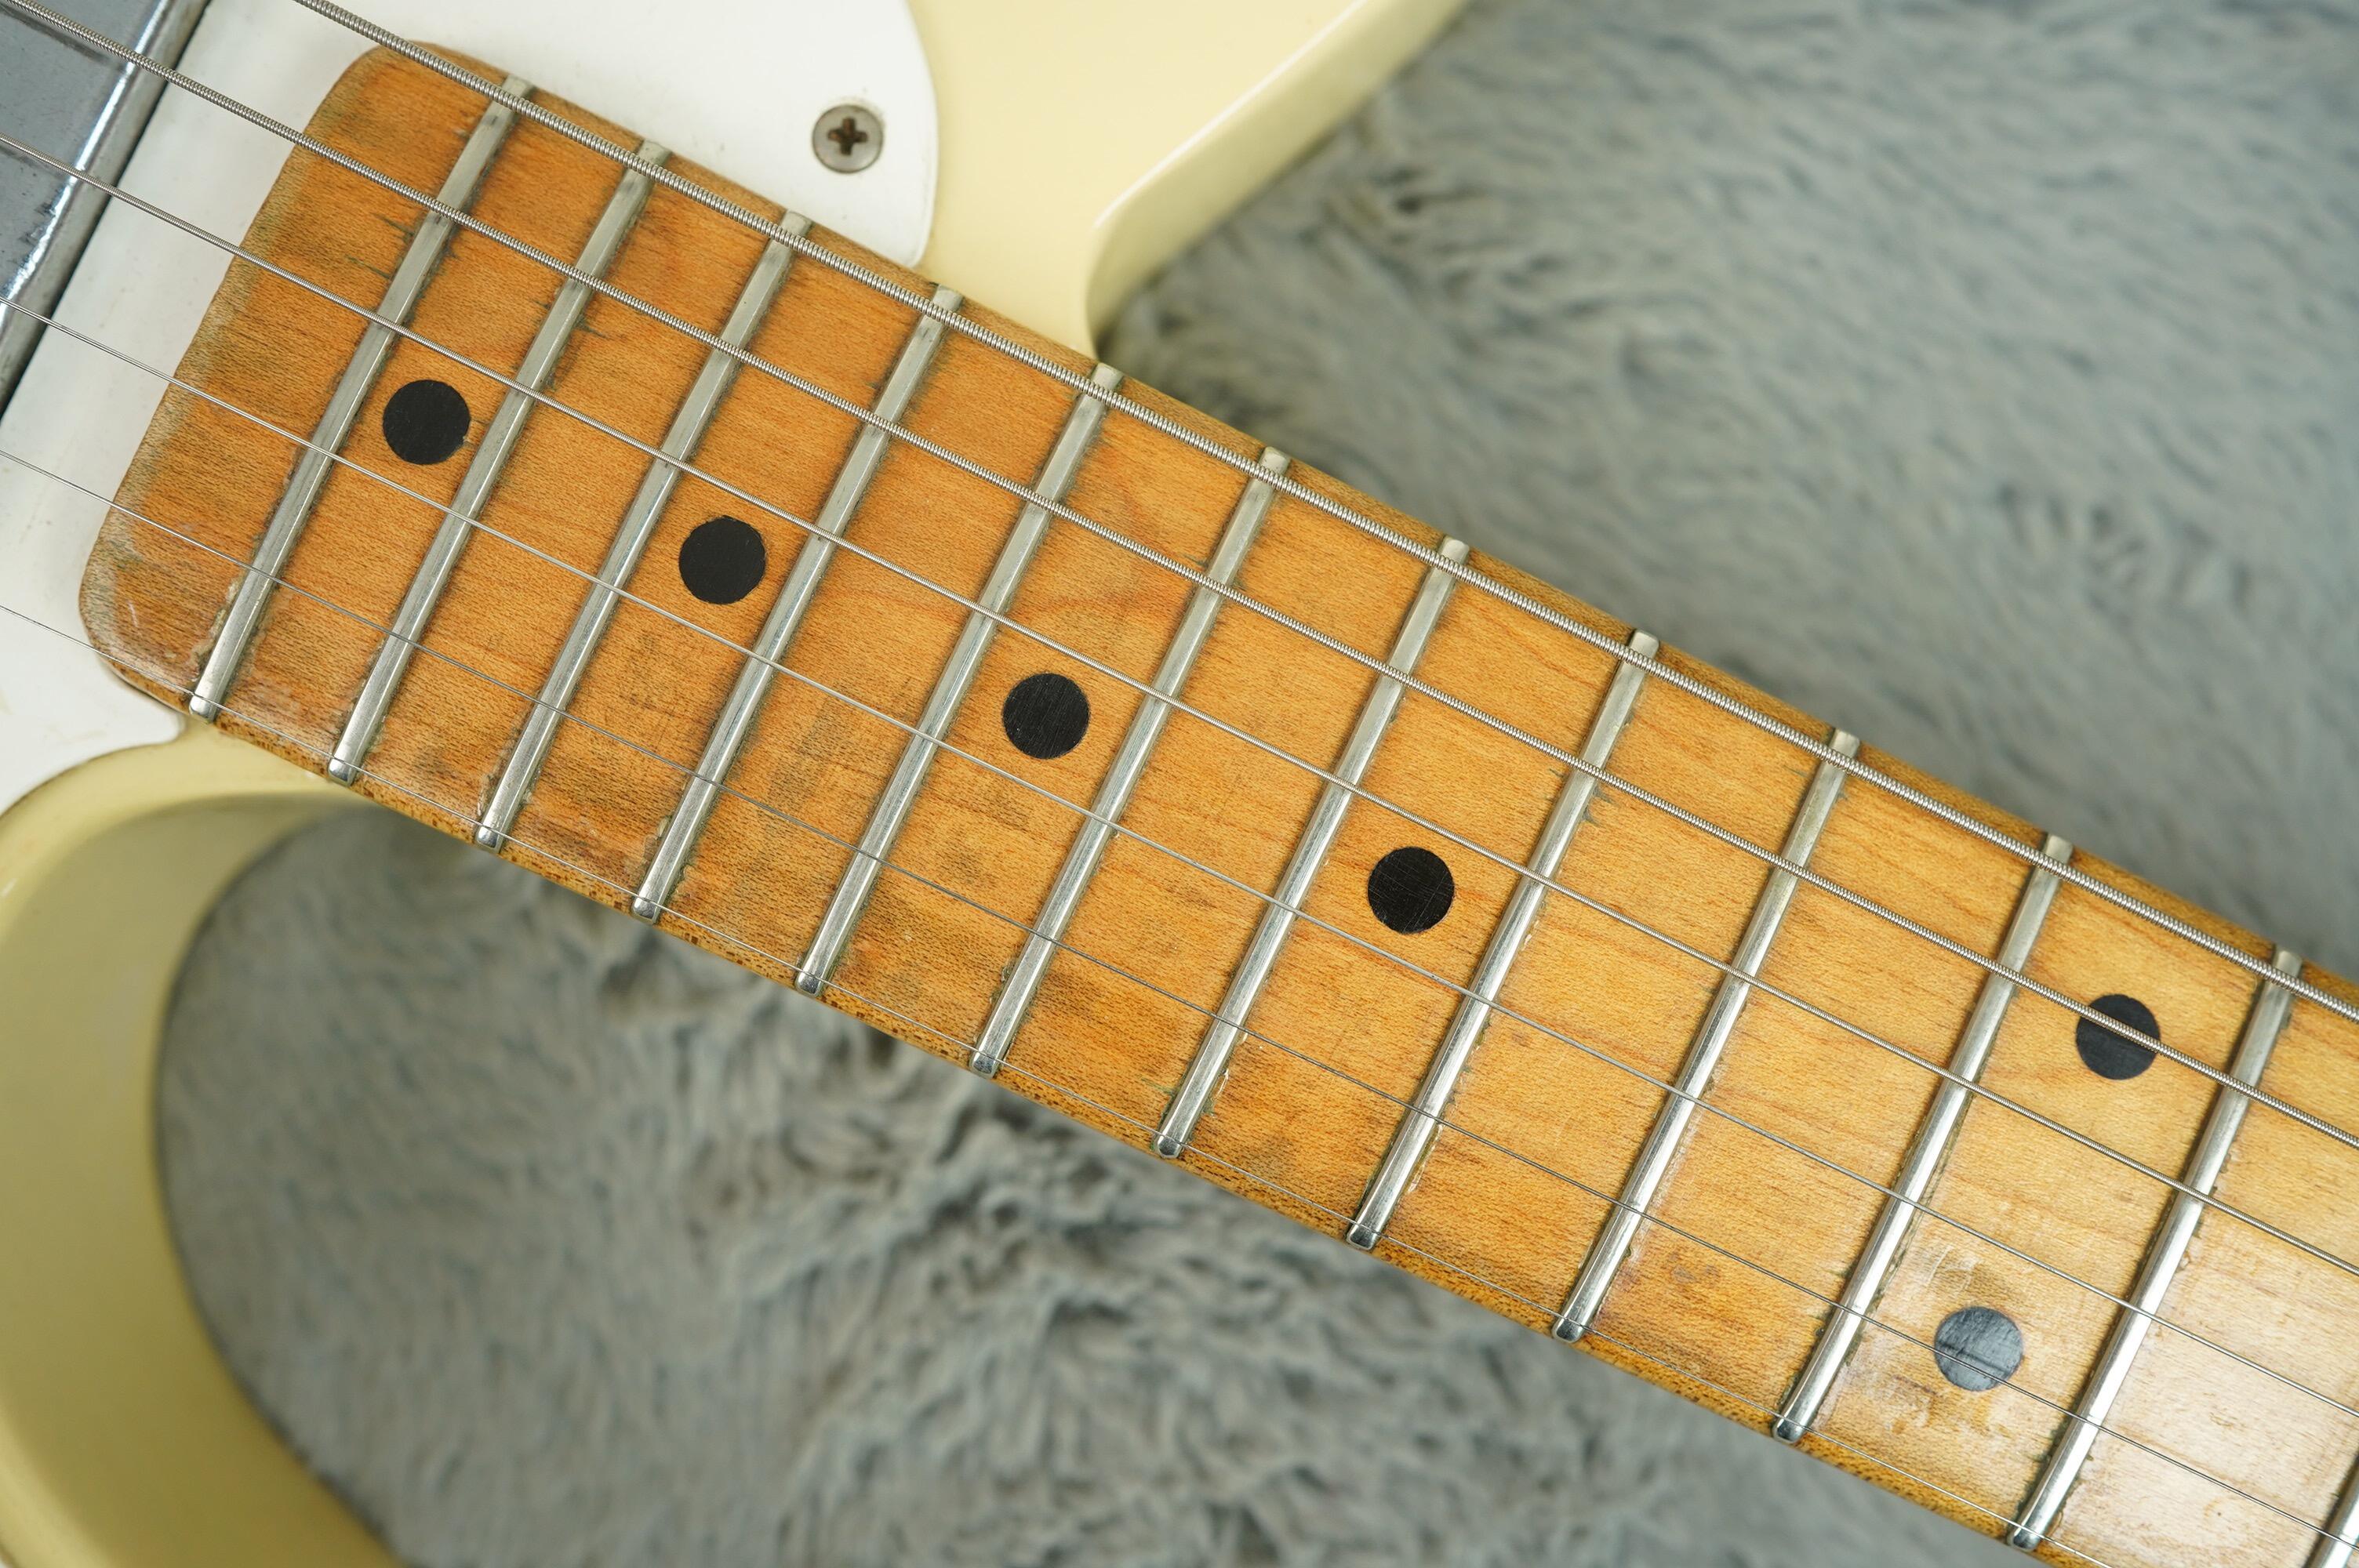 1959 Fender Telecaster blonde refin